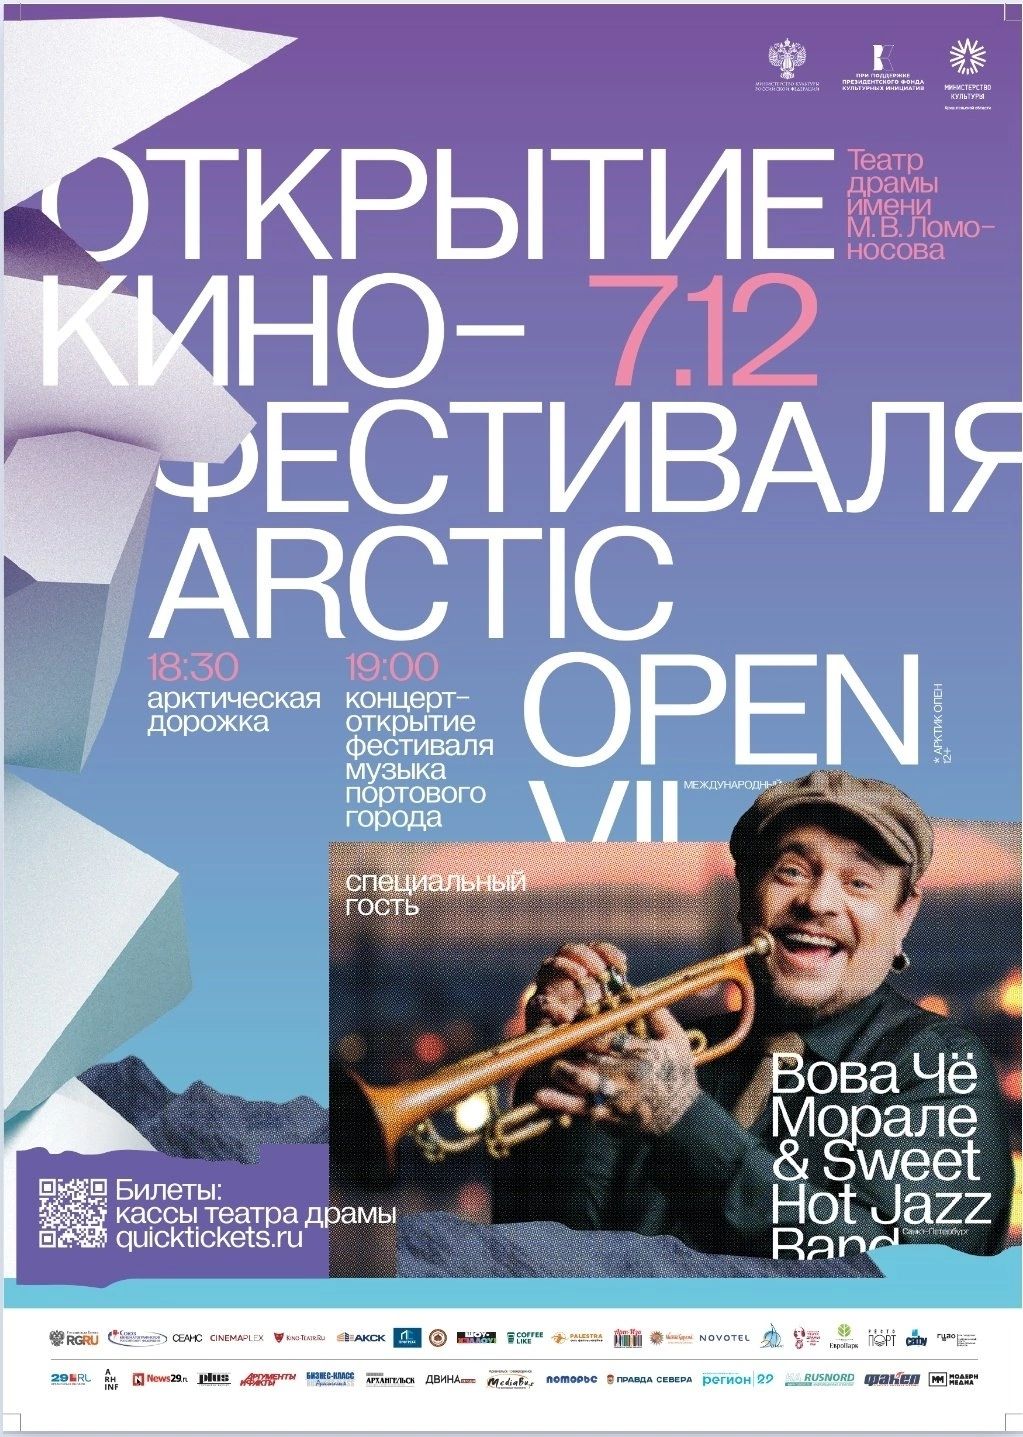 На кинофестивале Arctic Open в Архангельске обсудят Арктику будущего – «Арктику-2062»